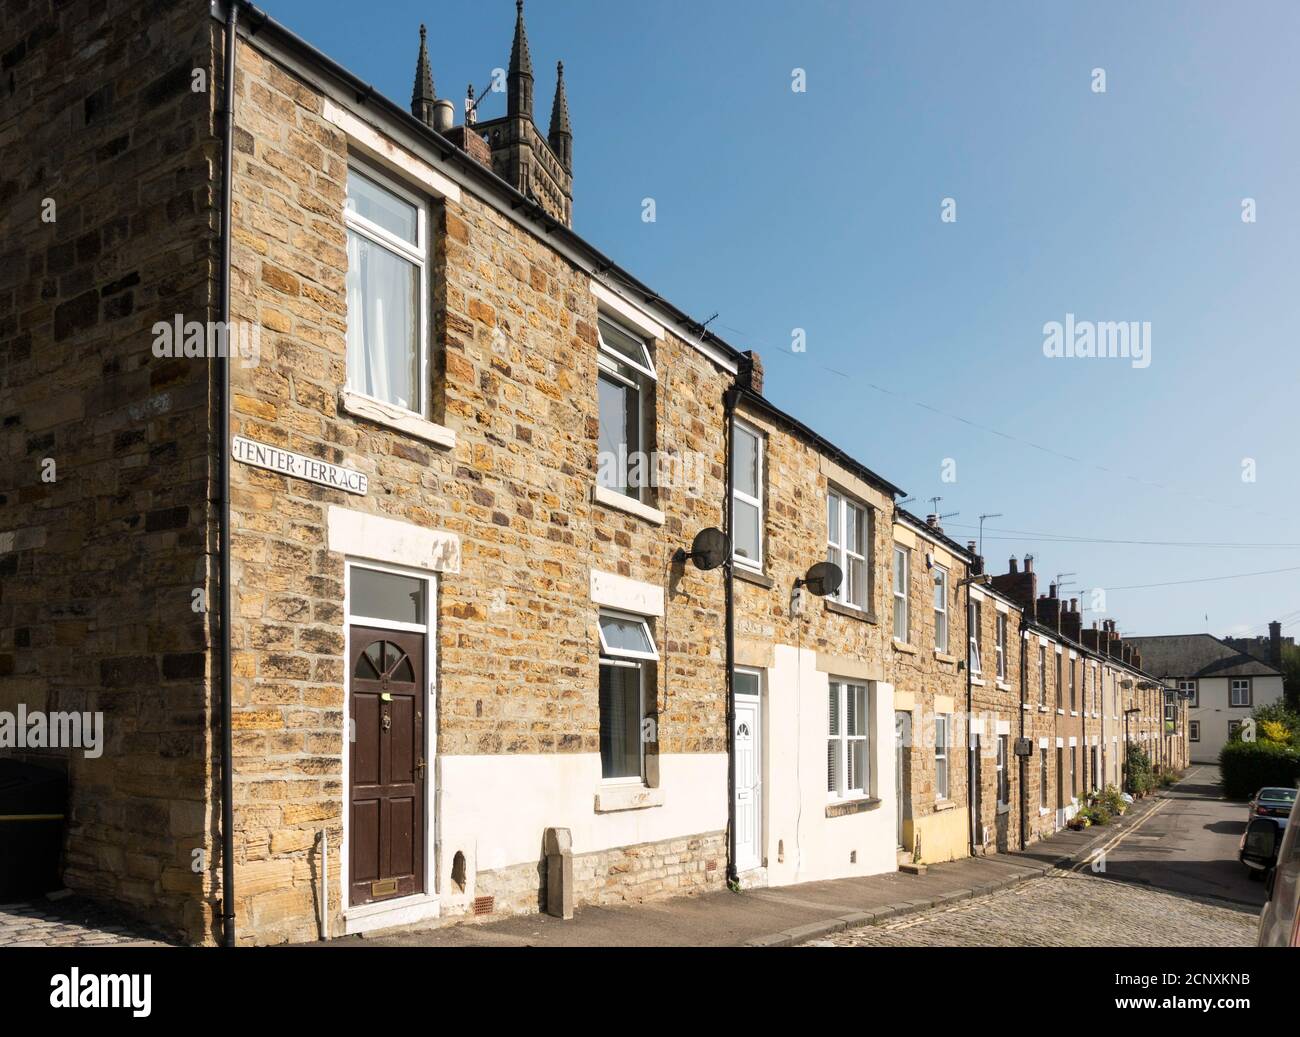 Tenter Terrace, une rangée de maisons en terrasse construites en grès local au début du XIXe siècle, Durham City, Co. Durham, Angleterre, Royaume-Uni Banque D'Images